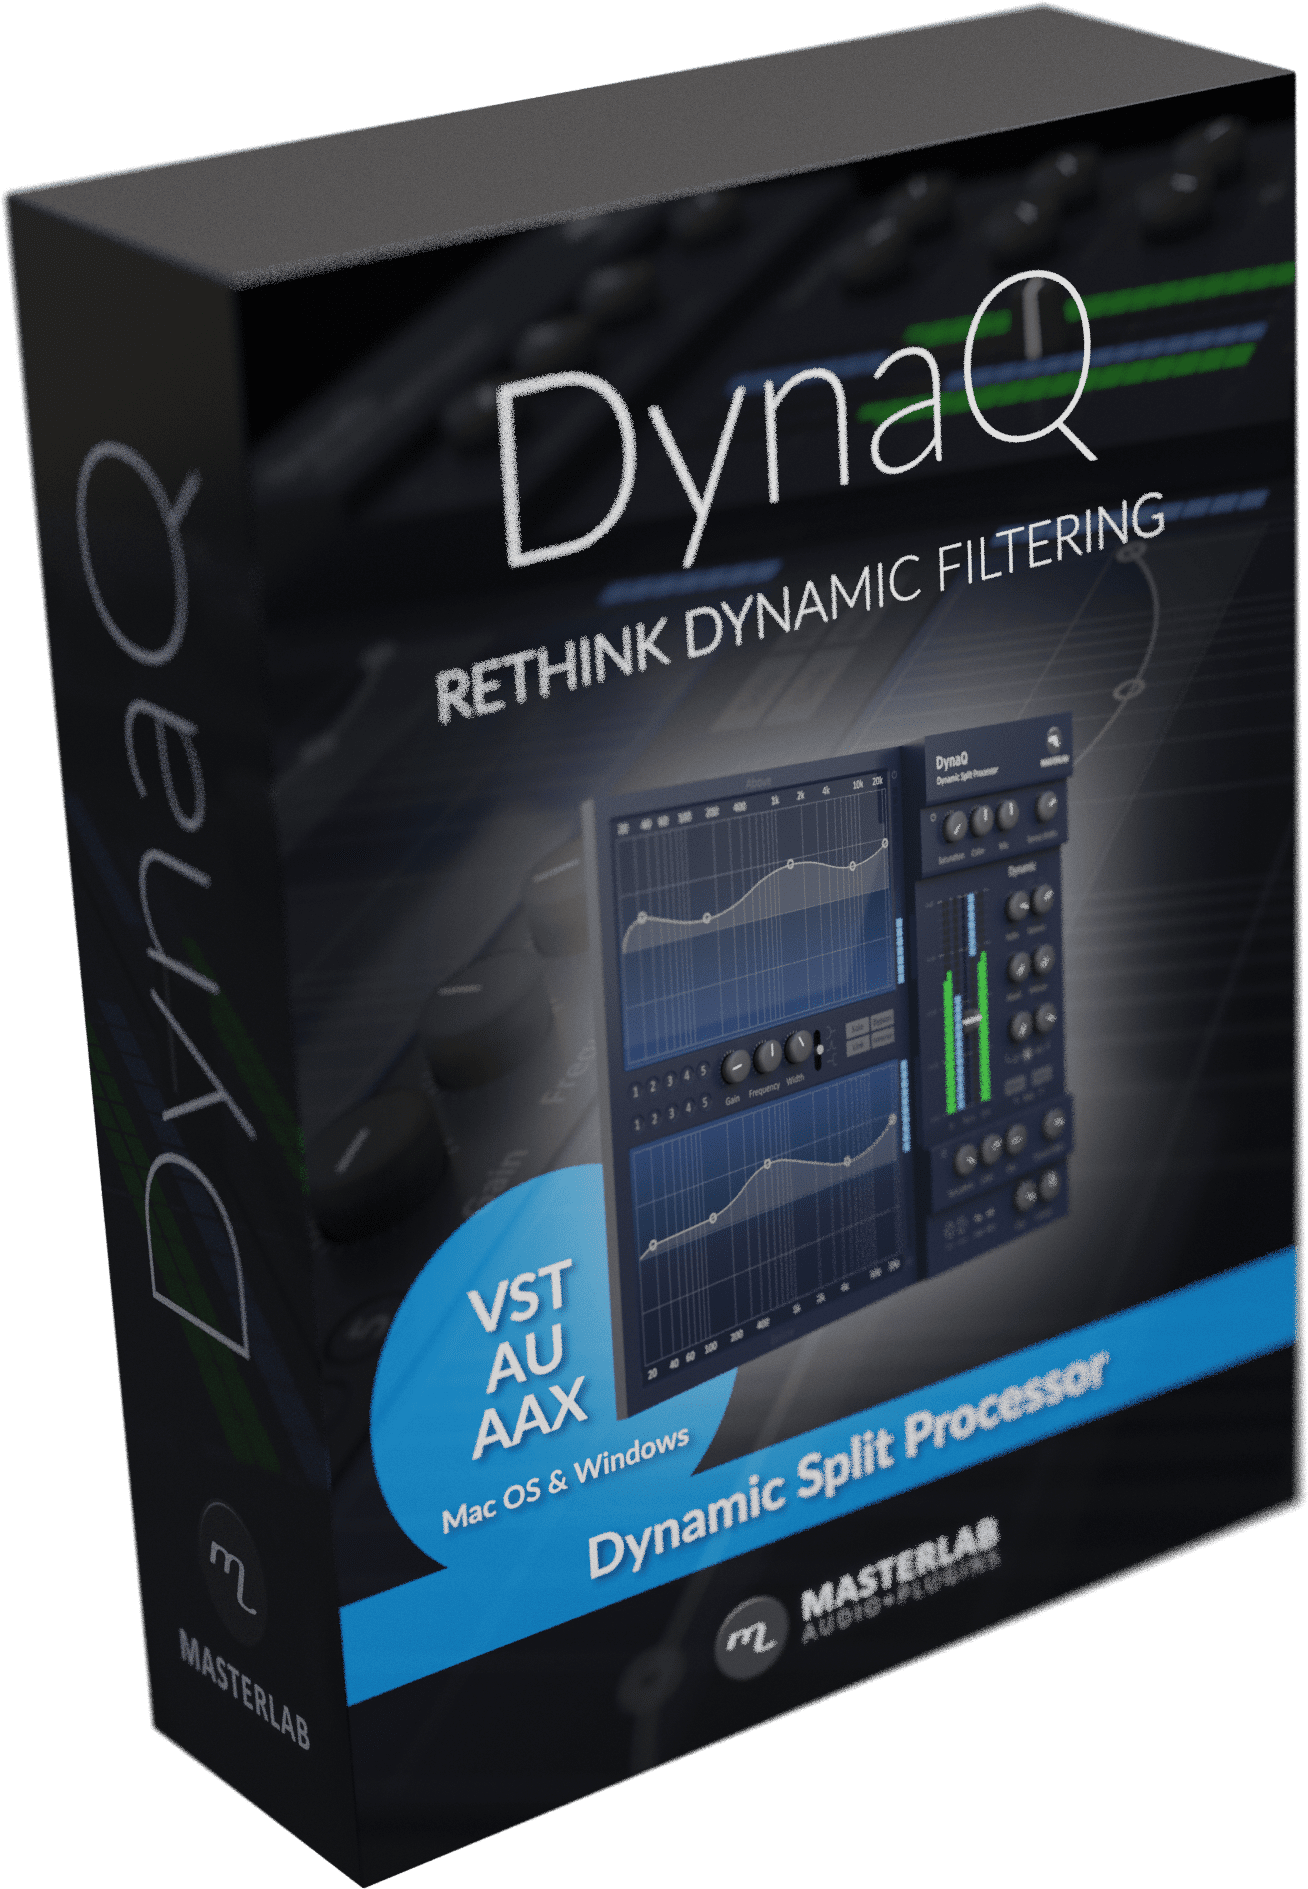 DynaQ by Masterlab Audio Includes Dynamic Split Processing